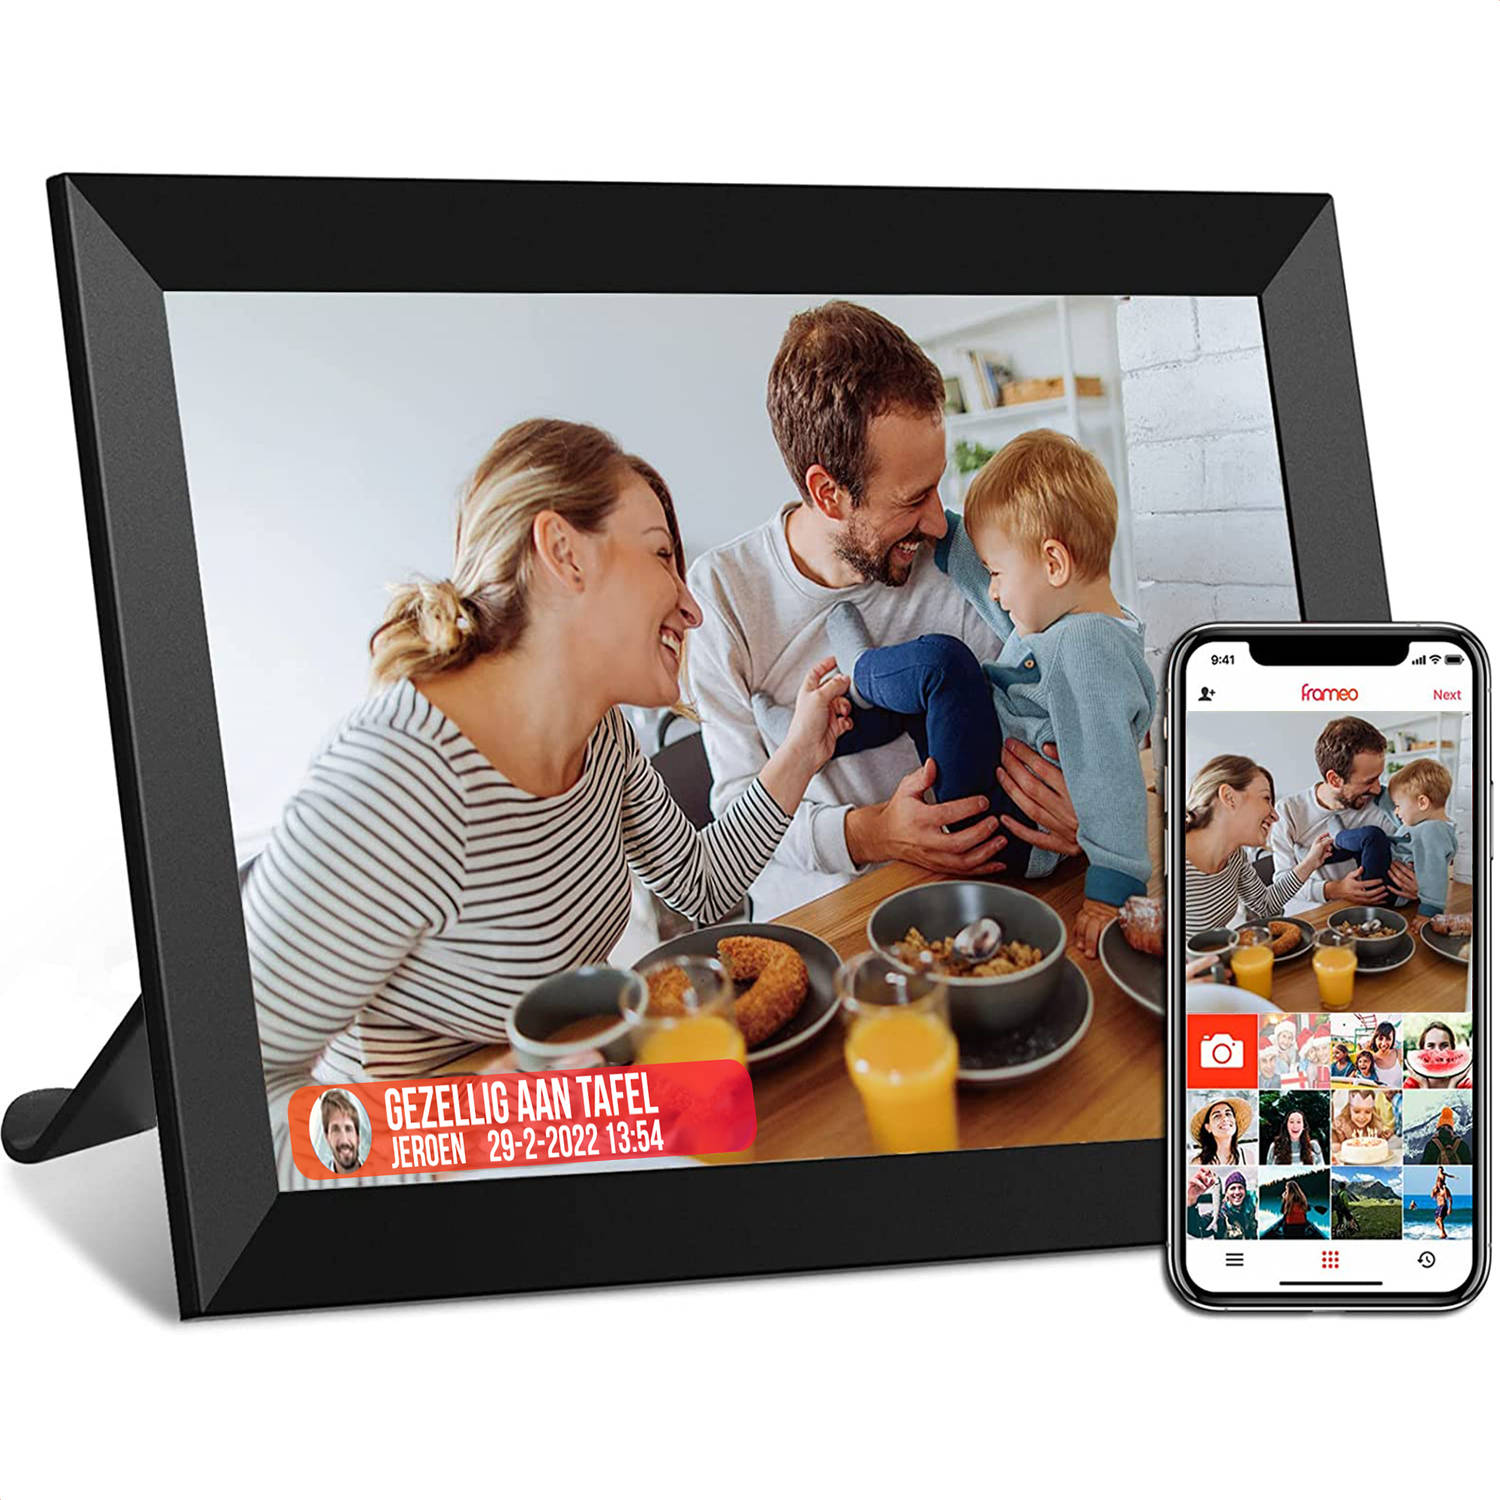 Strex Digitale Fotolijst Met Wifi 10.1 Inch Touchscreen Full Hd 1920x1200 Frameo Software Via App